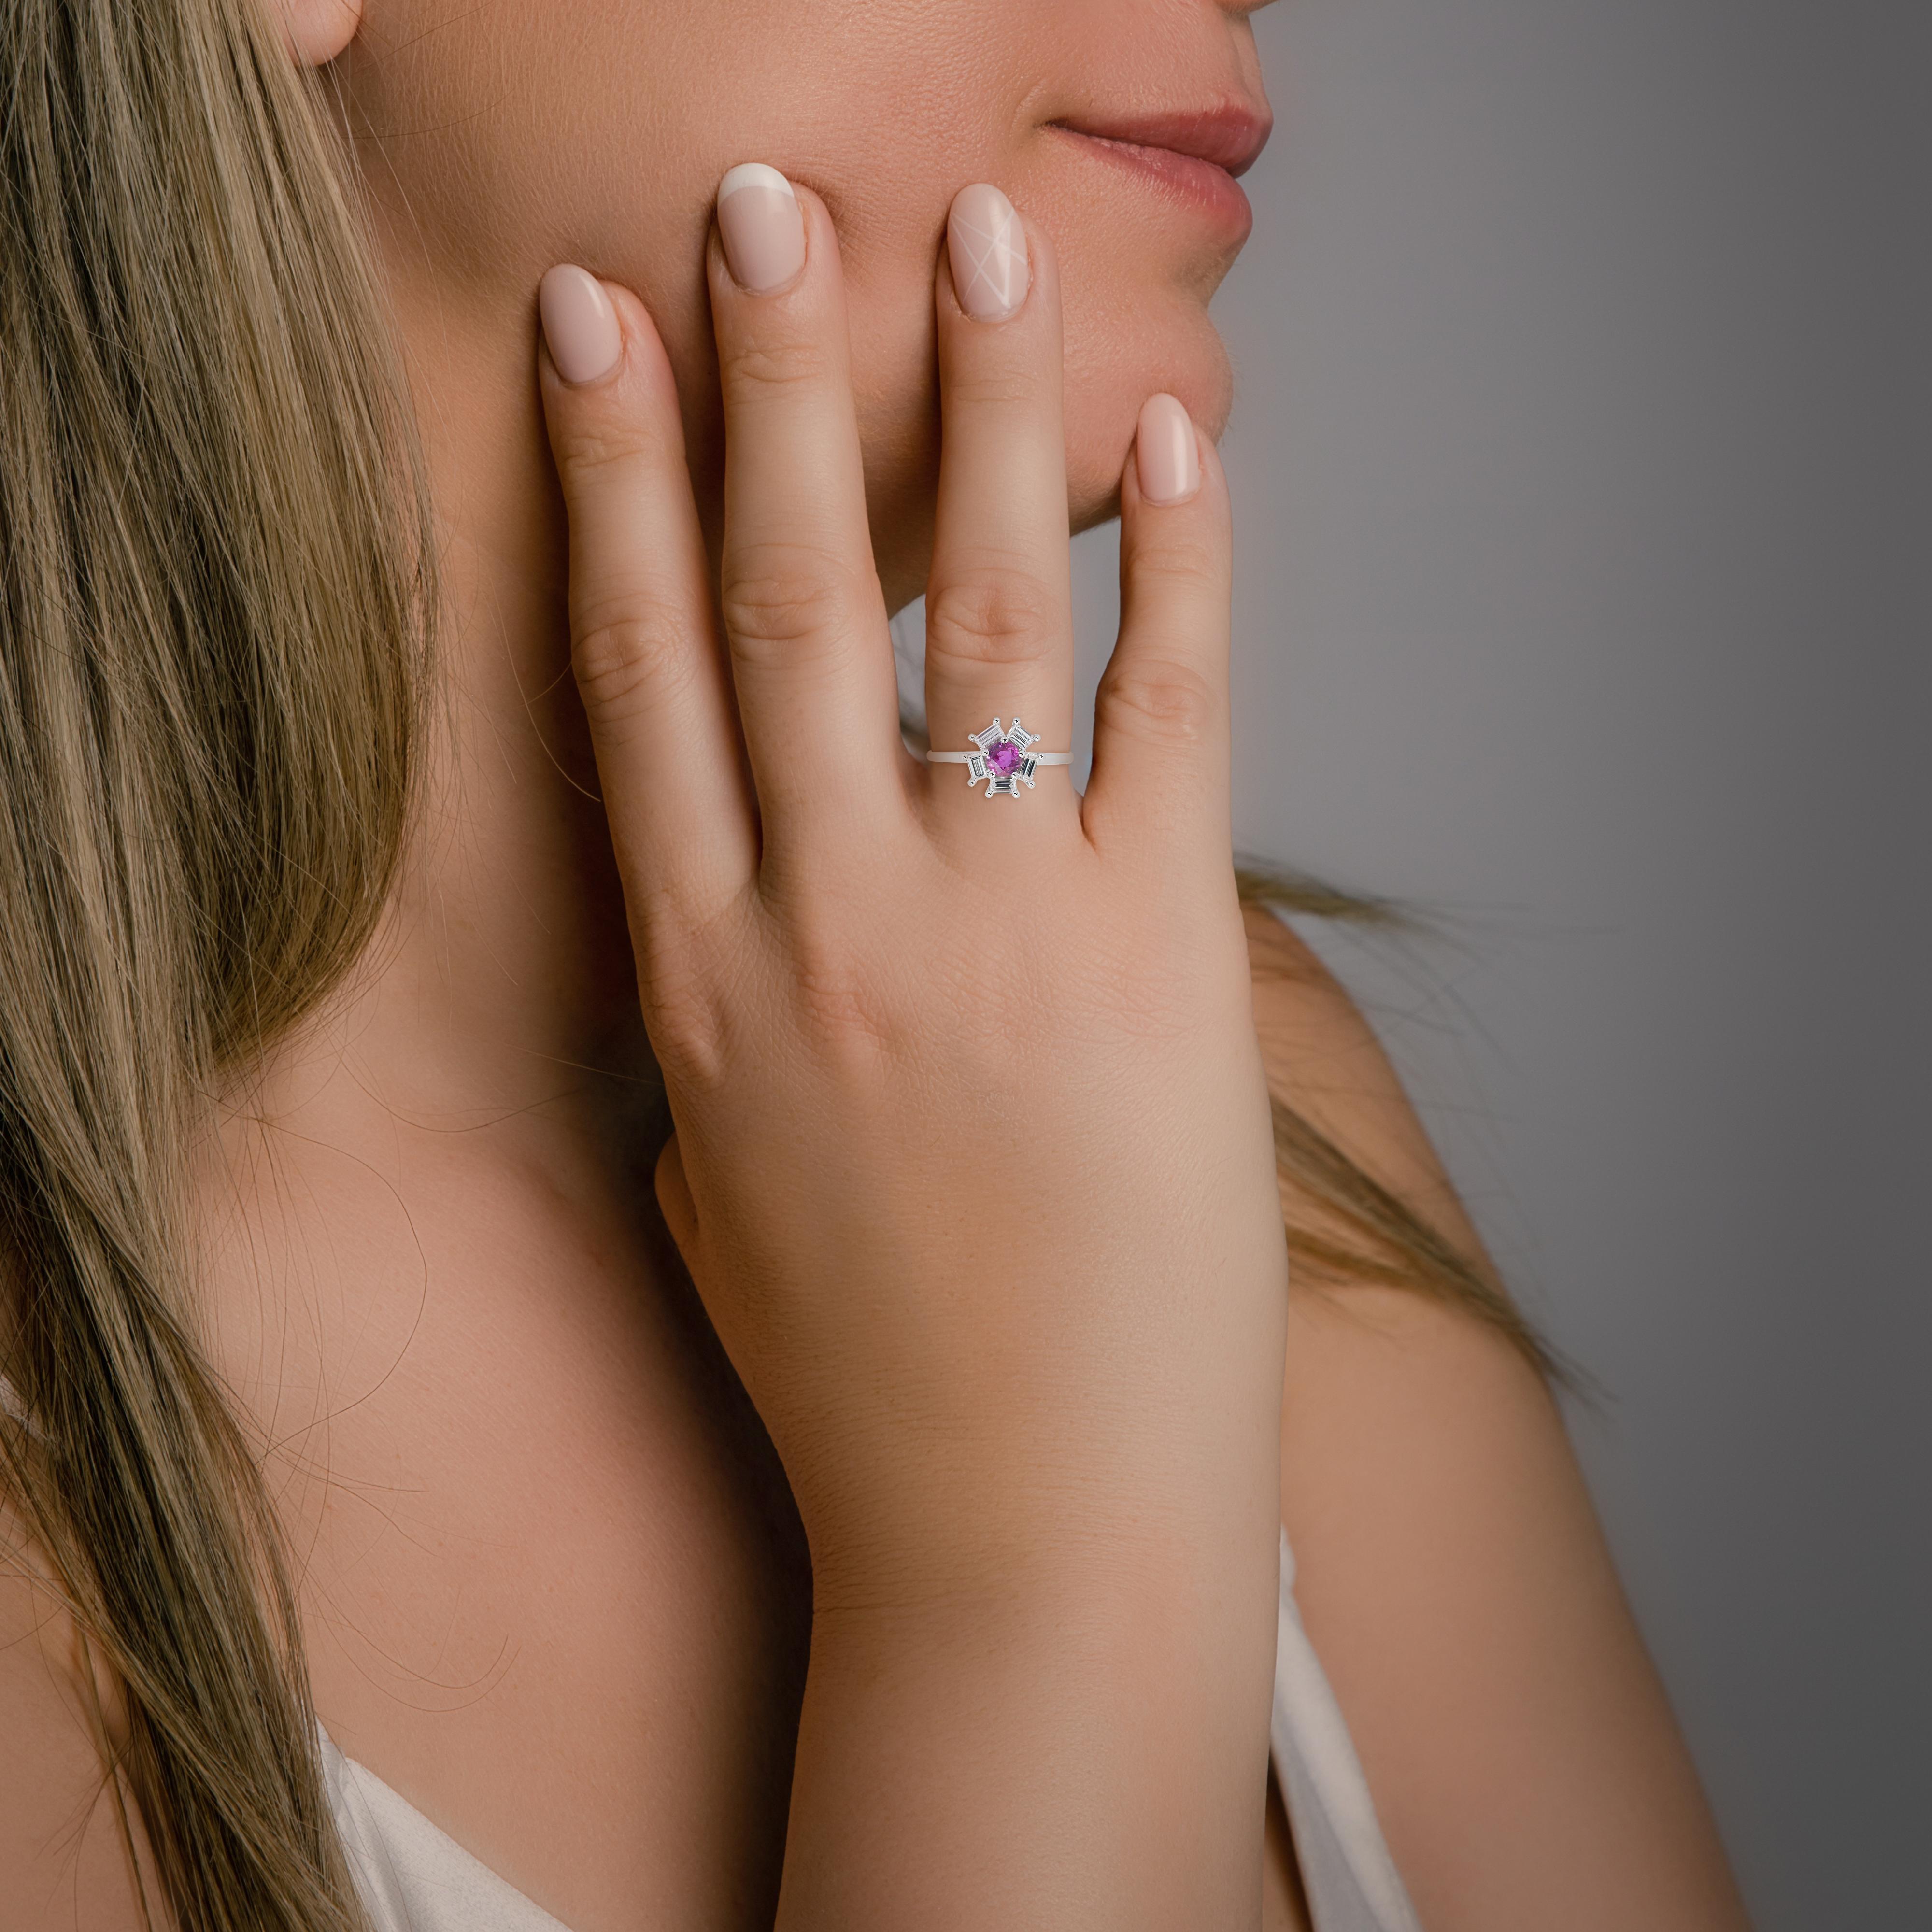 Vibrant 18k Weißgold Saphir und natürlichen Diamanten Halo Ring w/1,11 ct - IGI zertifiziert

Dieser bezaubernde Halo-Ring präsentiert einen atemberaubenden 0,61 Karat schweren Saphir im Rundschliff in einem faszinierenden violetten Farbton. Die